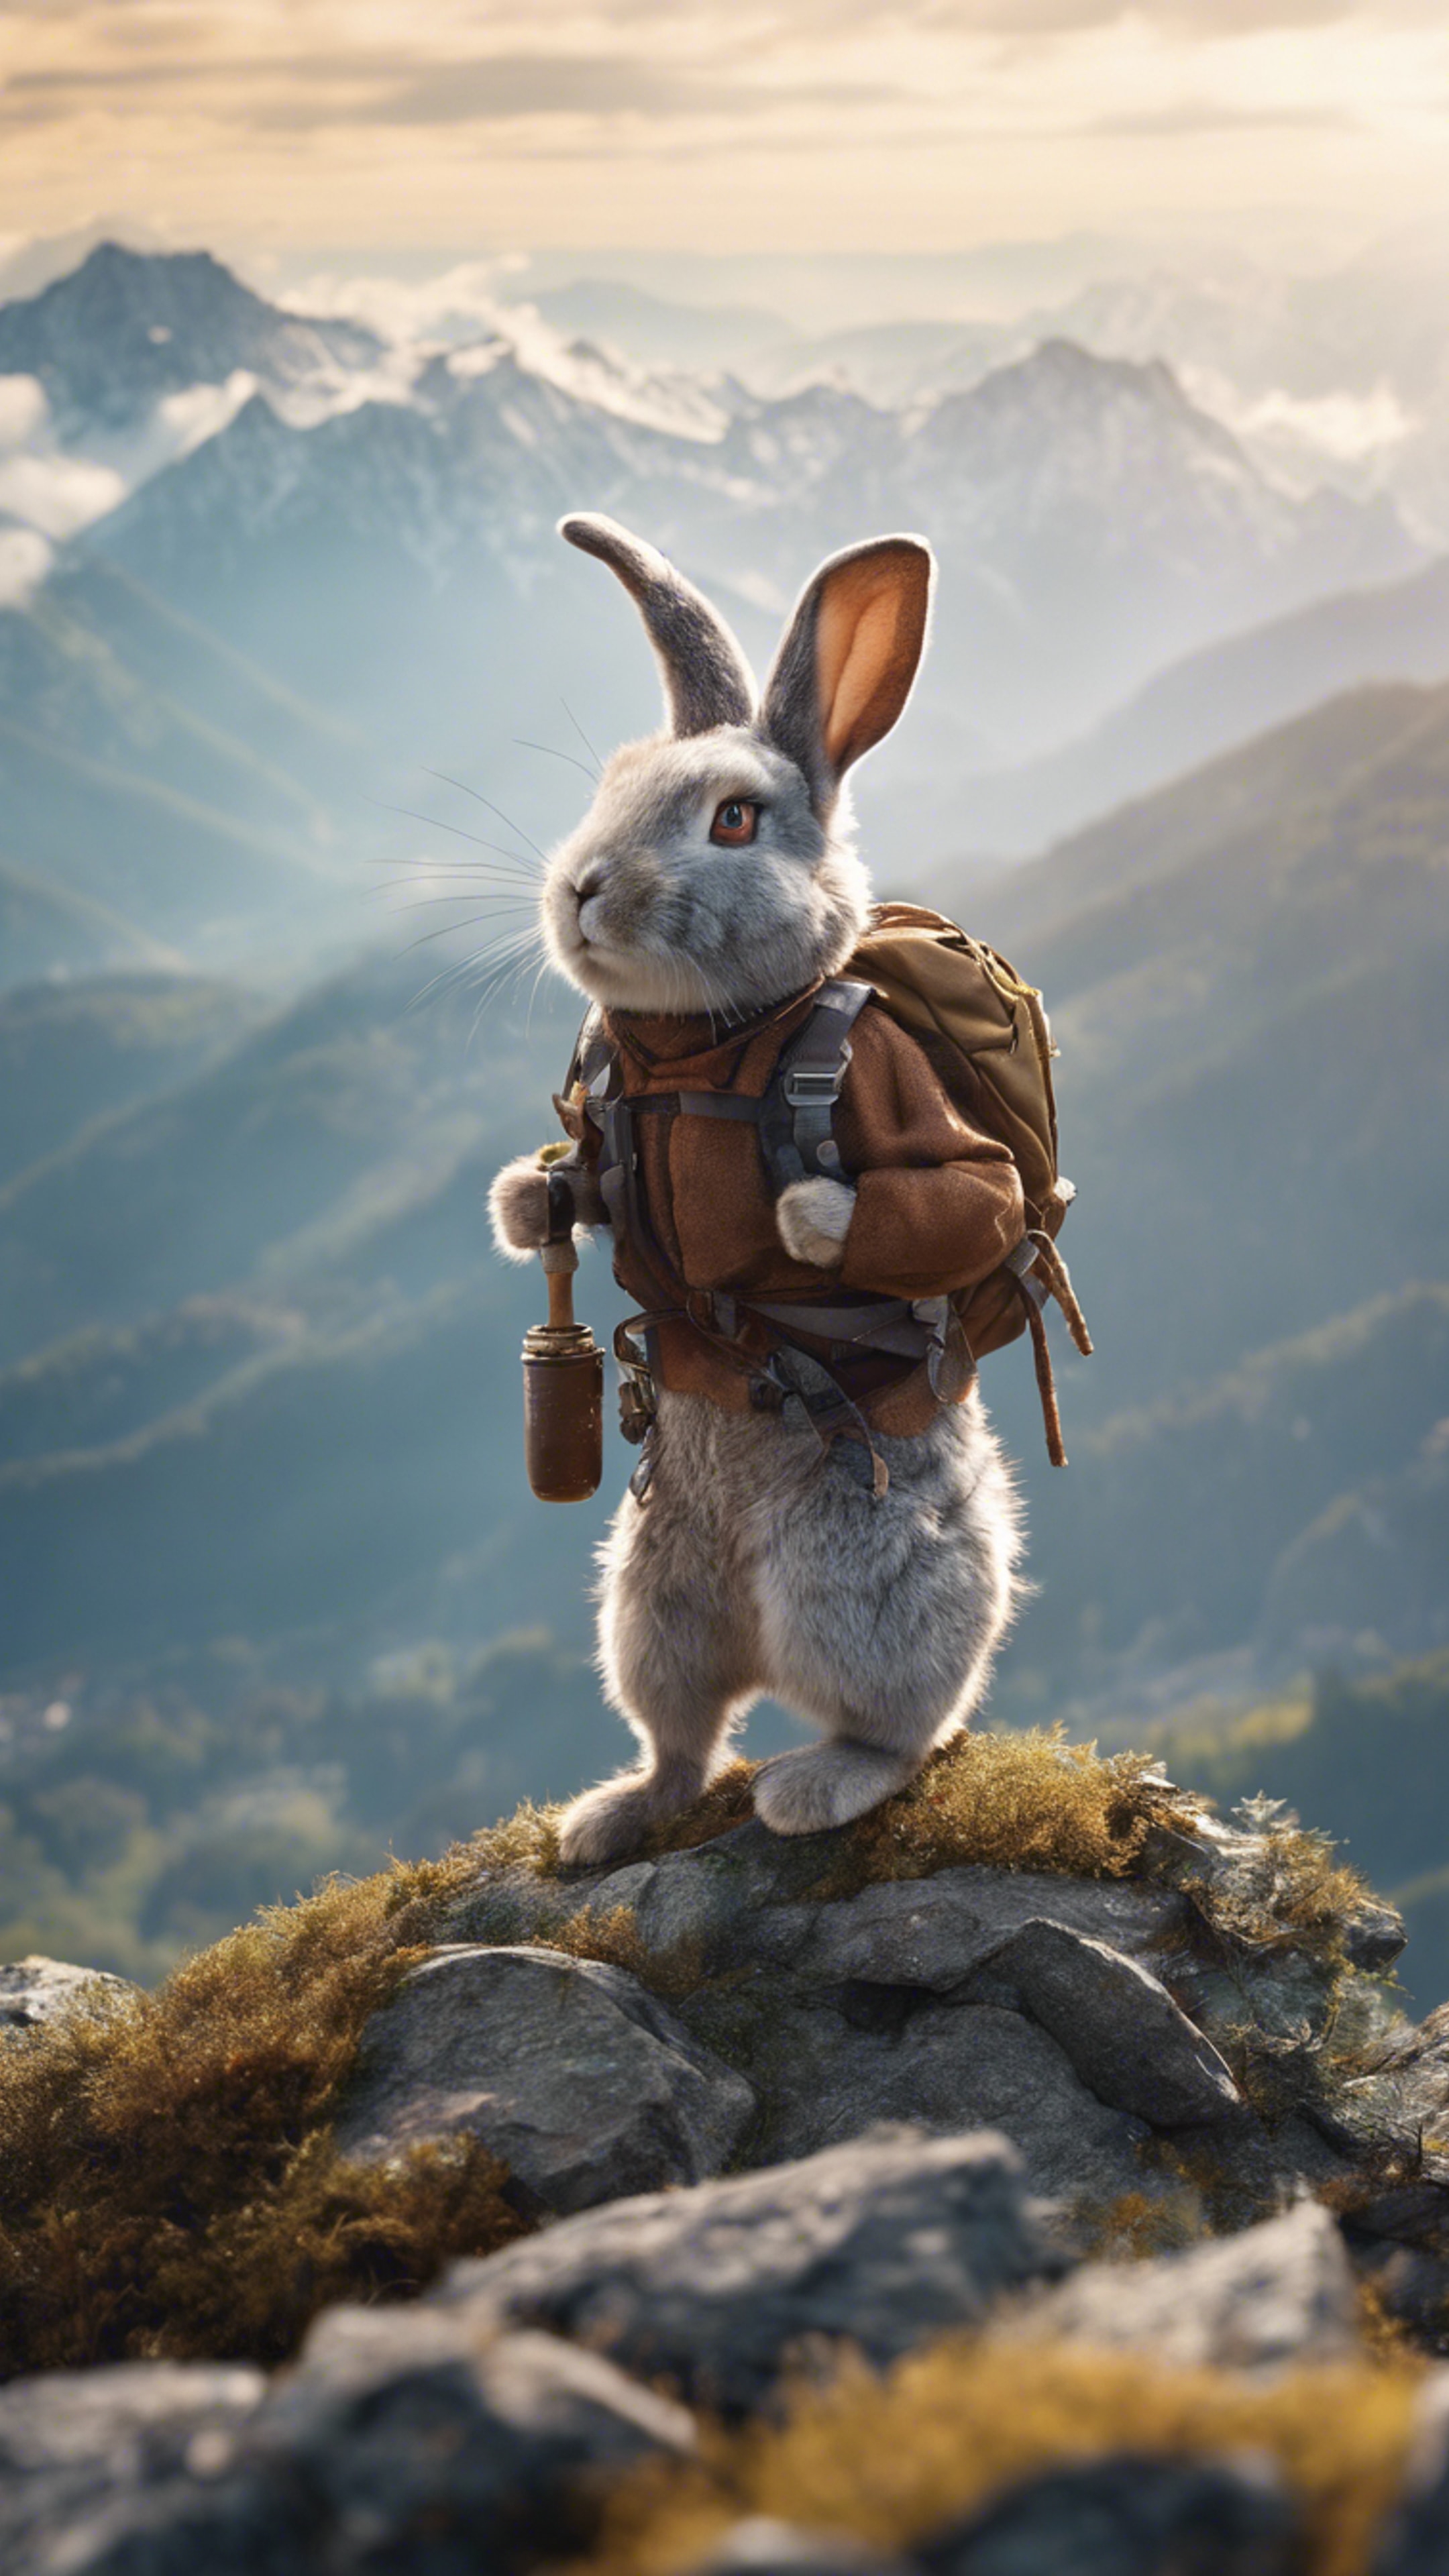 A Rabbit mountaineer conquering a treacherous peak. Hintergrund[faadaab6eec04e17a877]